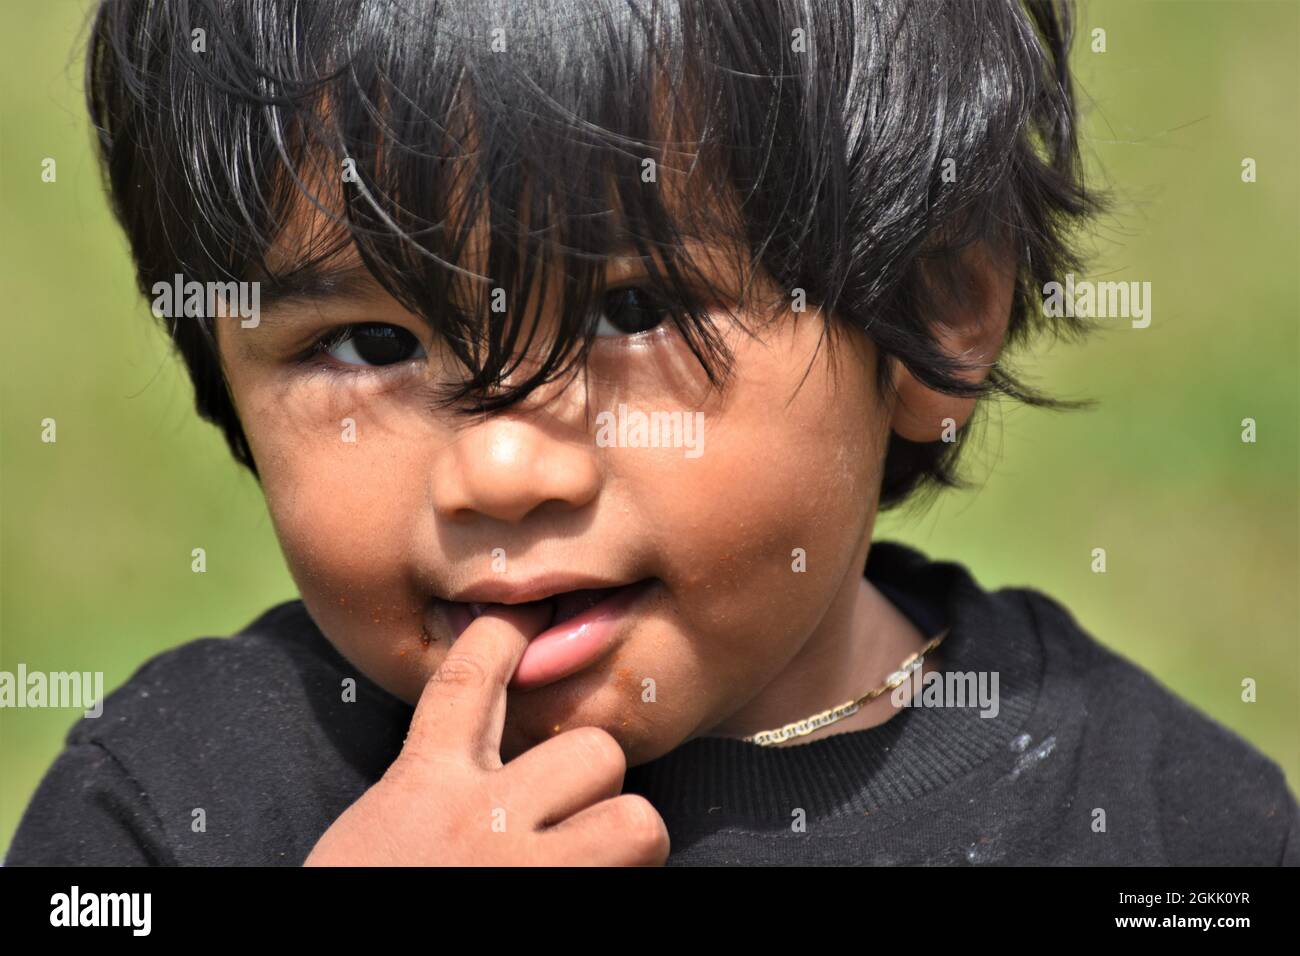 Ethnische asiatische Kleinkind Junge wollen sein Foto gemacht haben, volles Gesicht mit Spaß beobachten Stockfoto